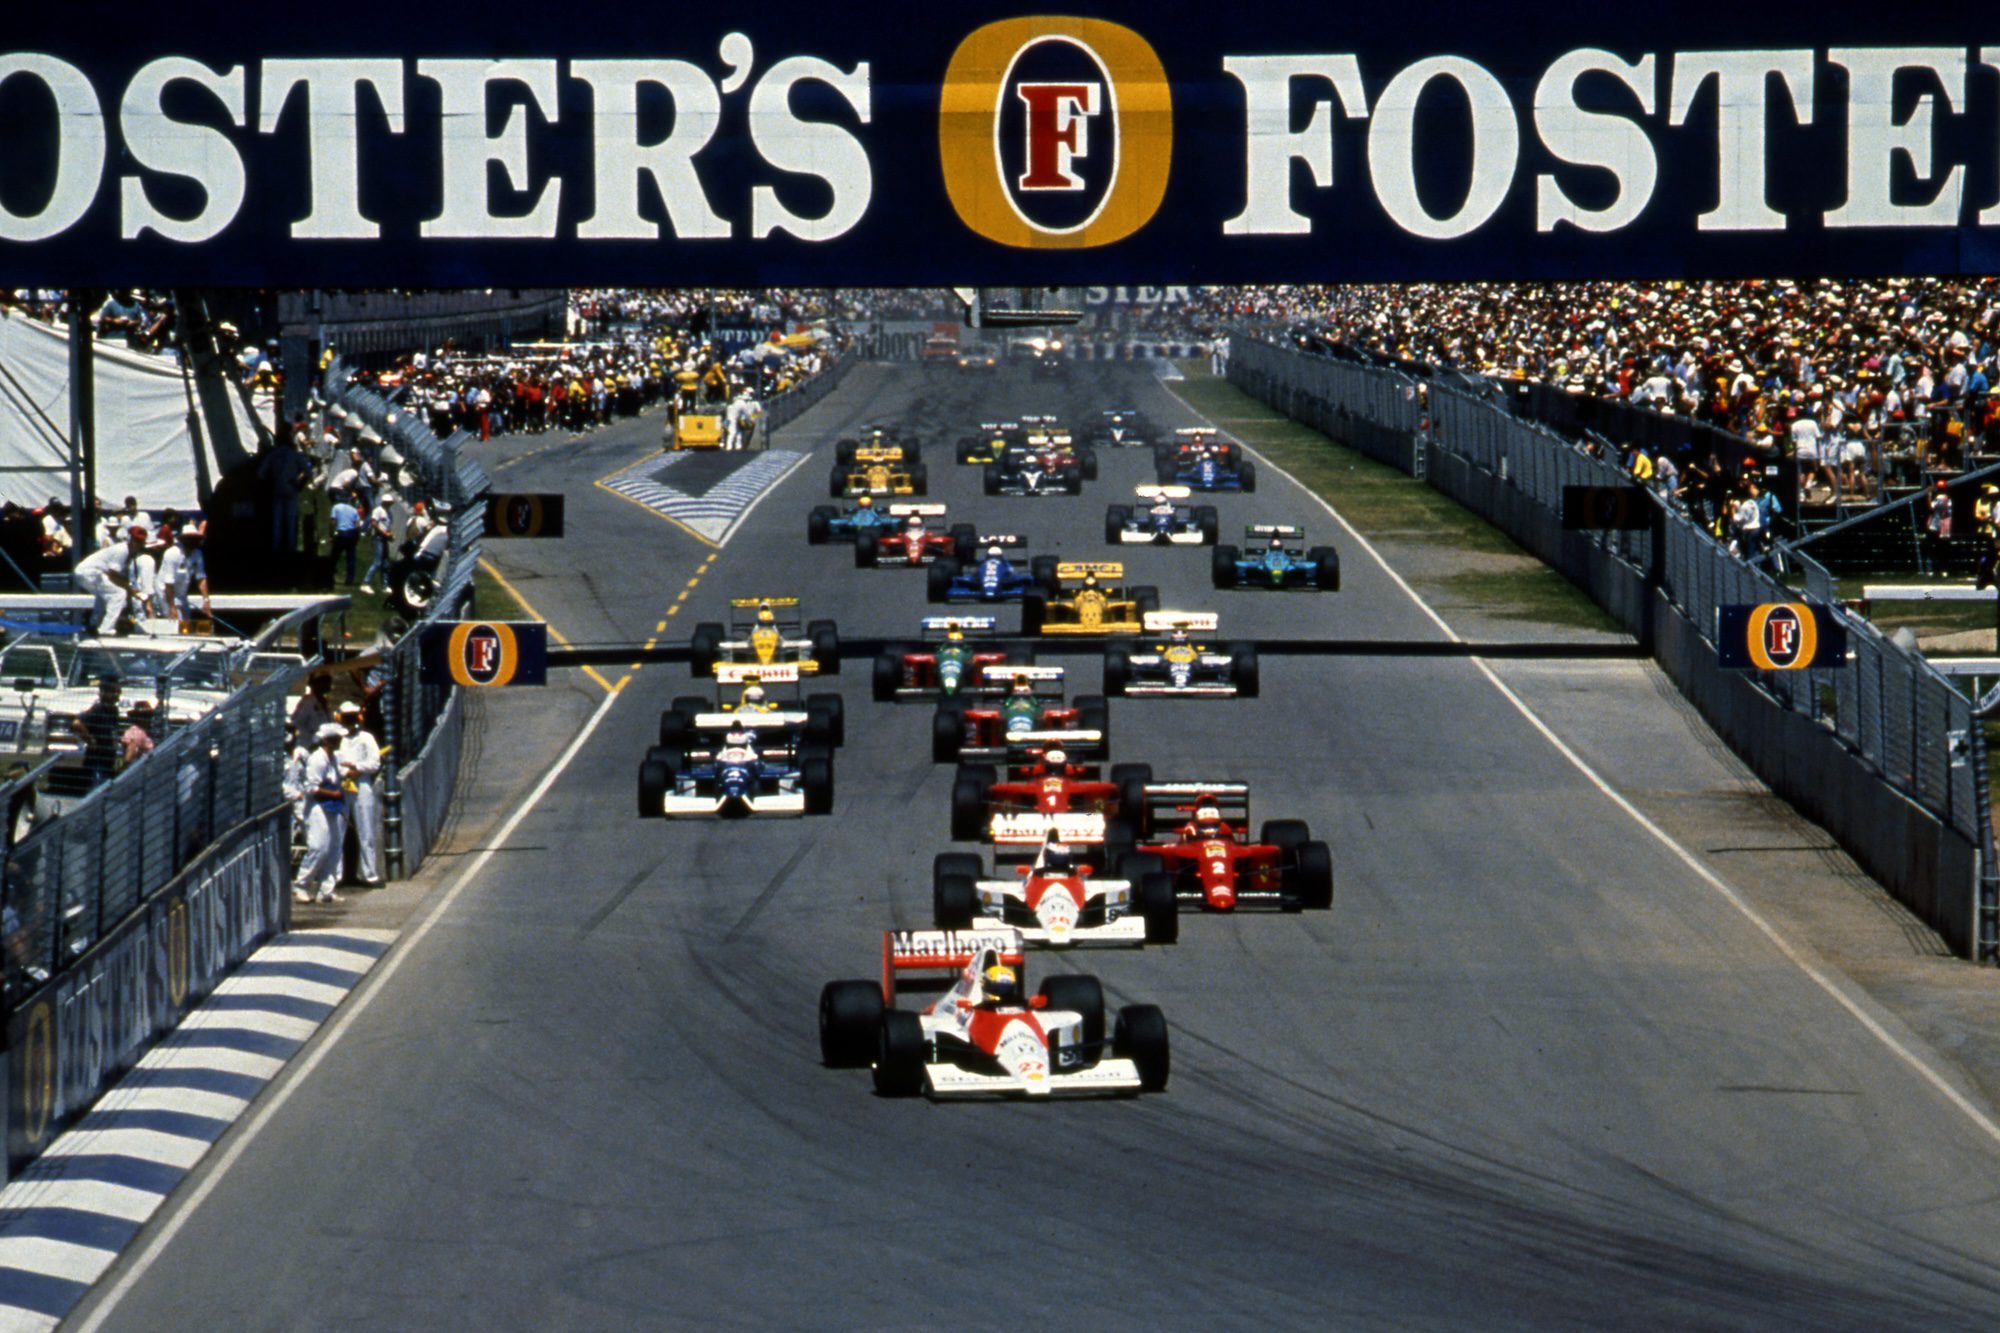 Especial Ayrton Senna: título de 1990 o solidifica como um dos maiores pilotos da história